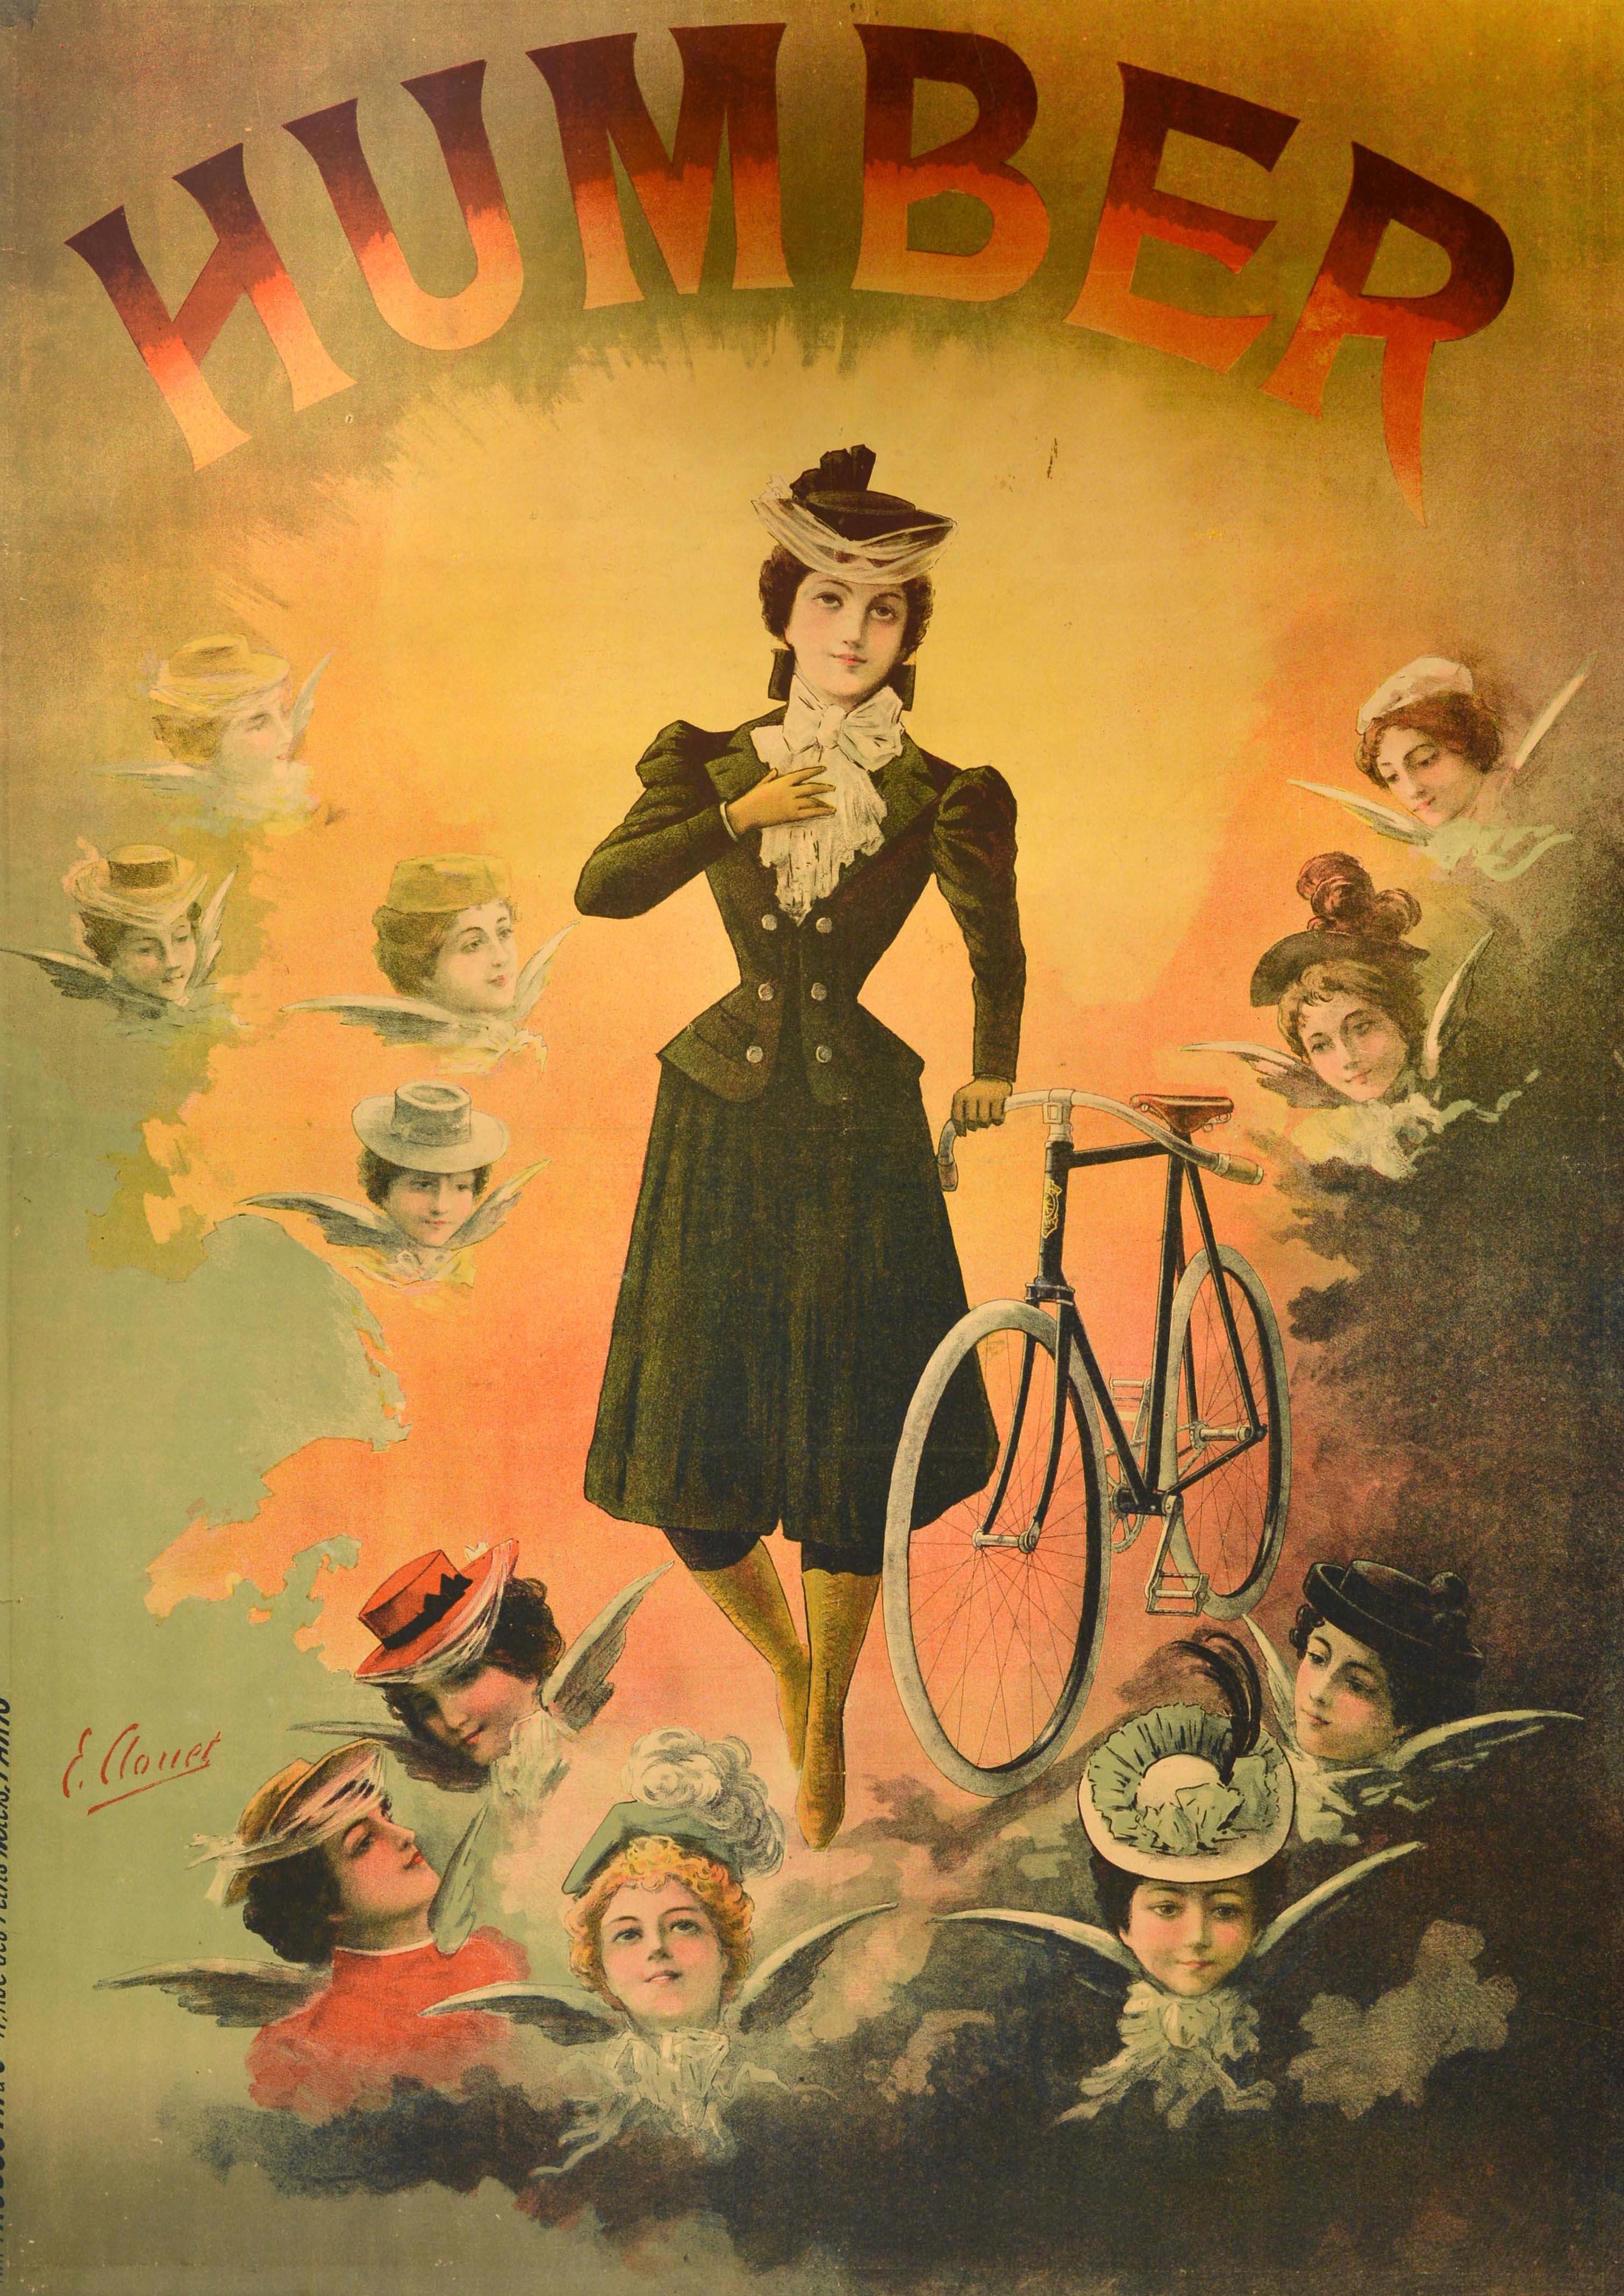 Originales antikes Werbeplakat für Humber-Fahrräder mit einer himmlischen Illustration einer modisch gekleideten Dame mit einem Fahrrad, das von der strahlenden Sonne hinter ihr beleuchtet wird, und den Gesichtern von Damen als Engeln mit Flügeln in